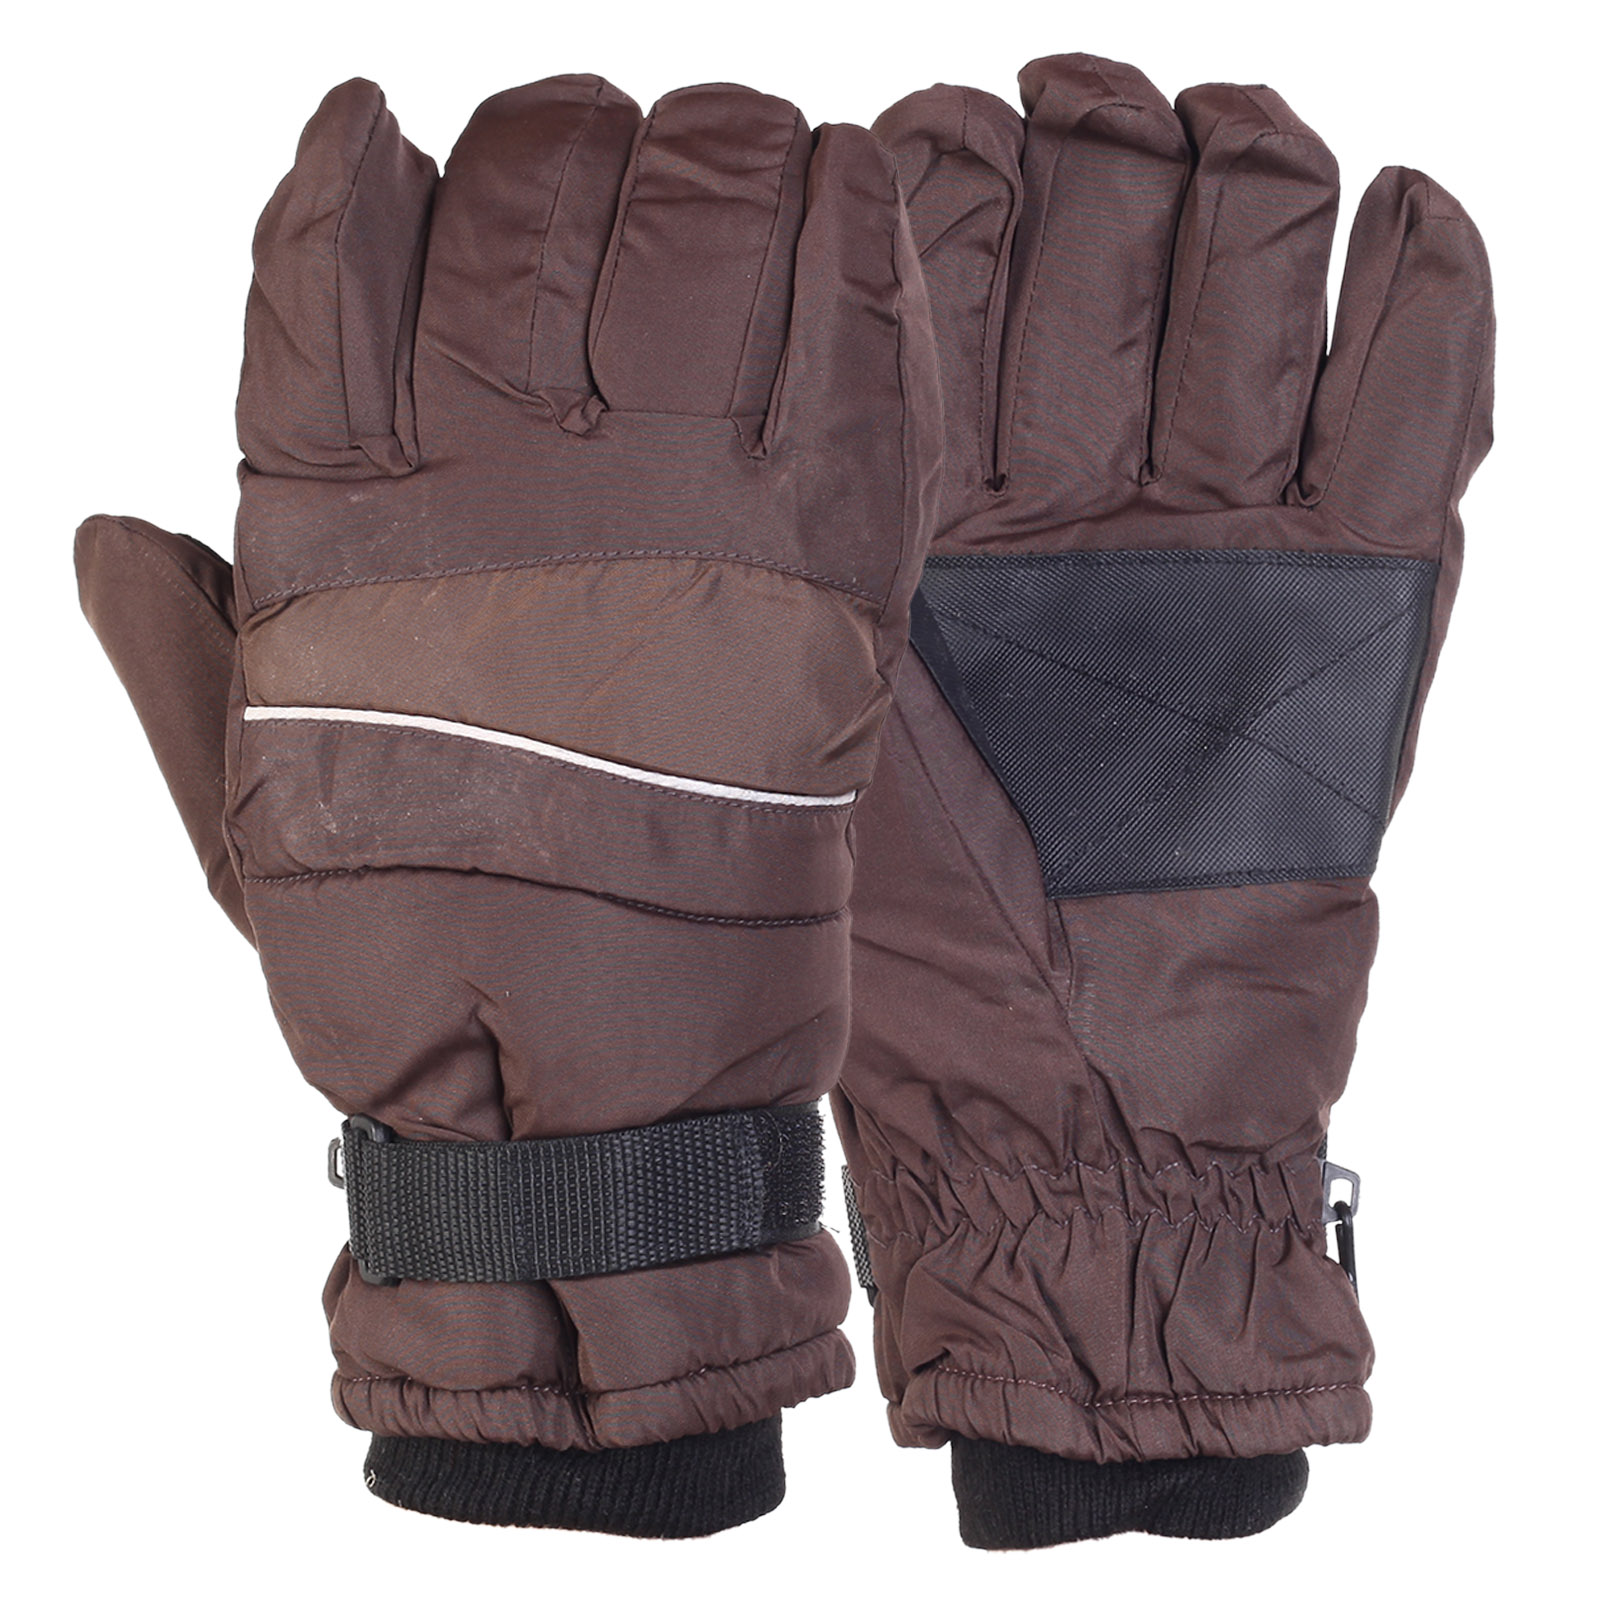 Купить недорого утепленные перчатки на зиму